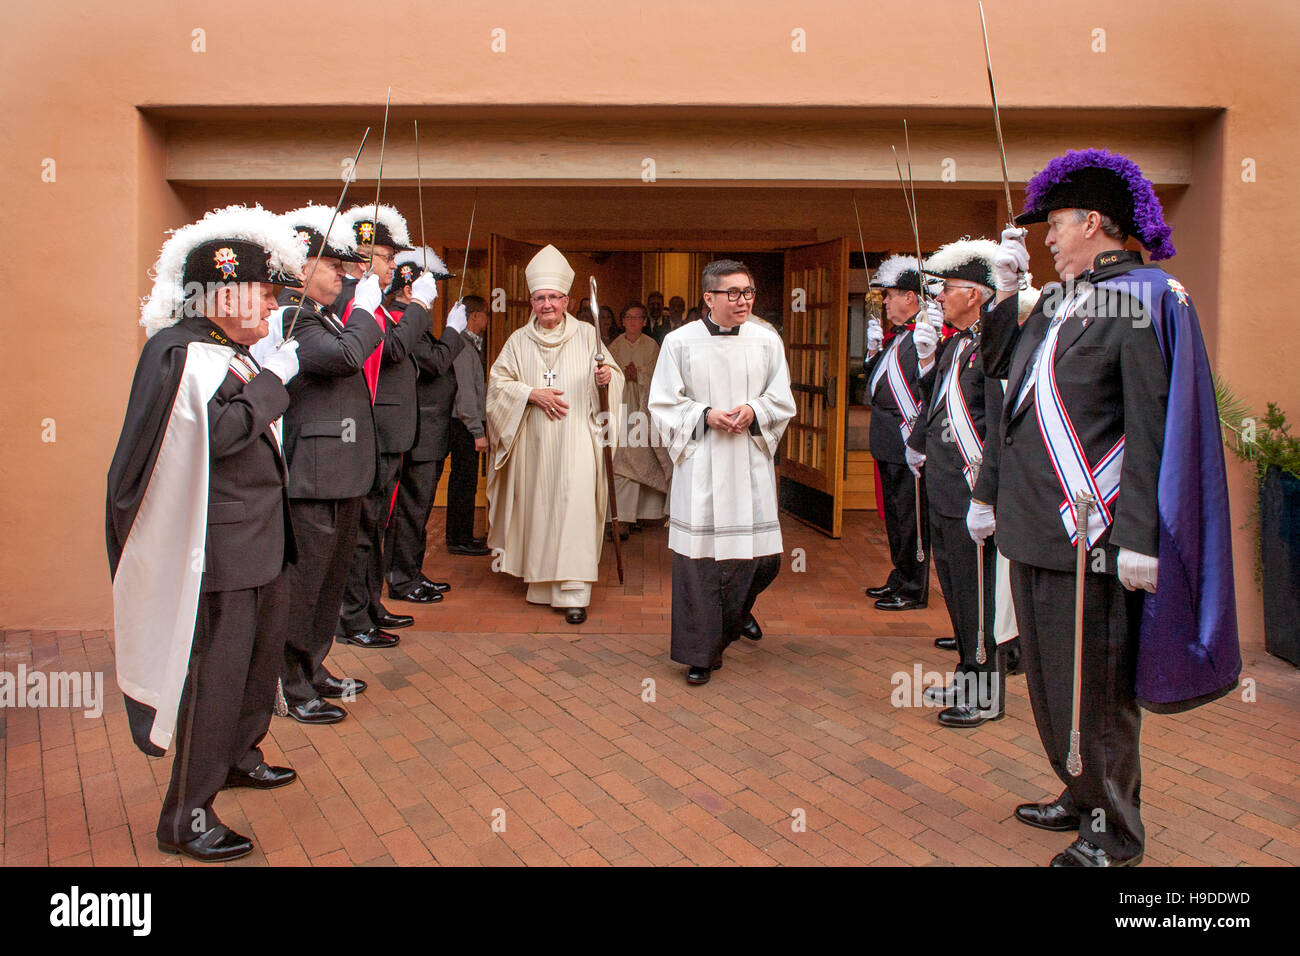 Besuch Bischof wird von aufwändig kostümierte Mitglieder von den Knights Of Columbus St. Timothy katholische Kirche, Laguna Niguel, CA. Hinweis Säbel und Priester in der rechten Mitte begrüßt. Stockfoto